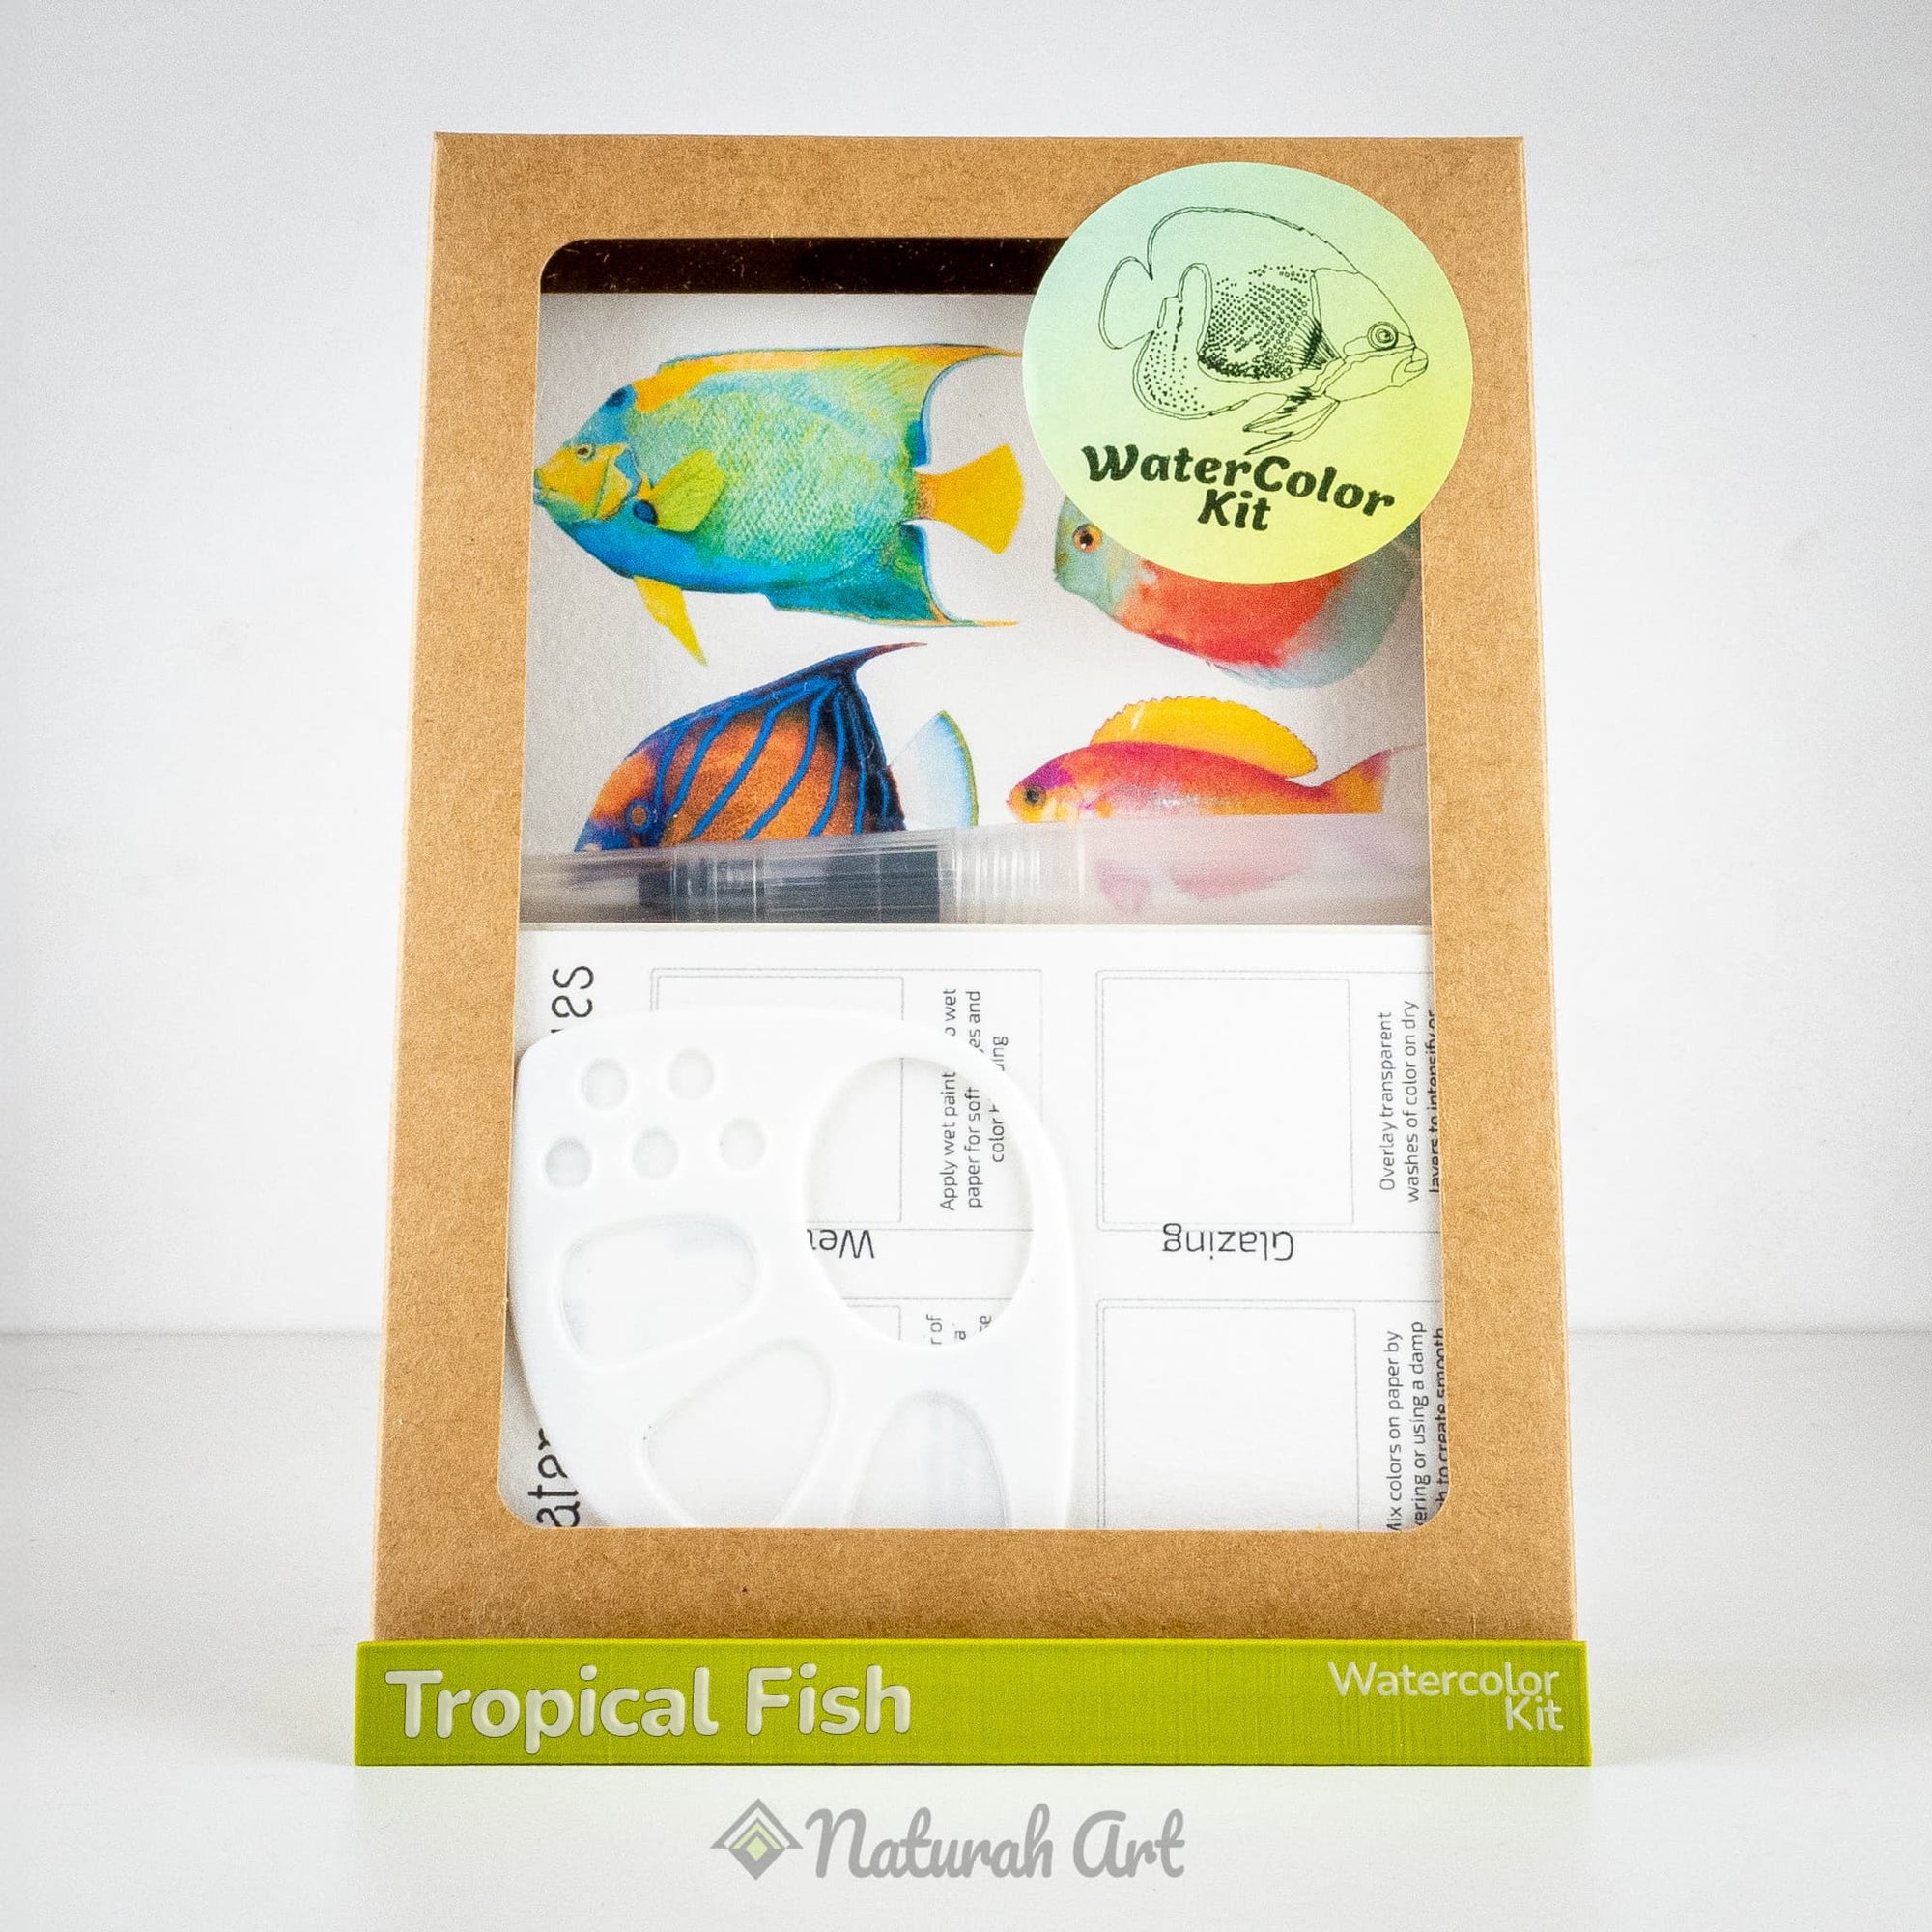 Tropical-Fish WaterColor Kit